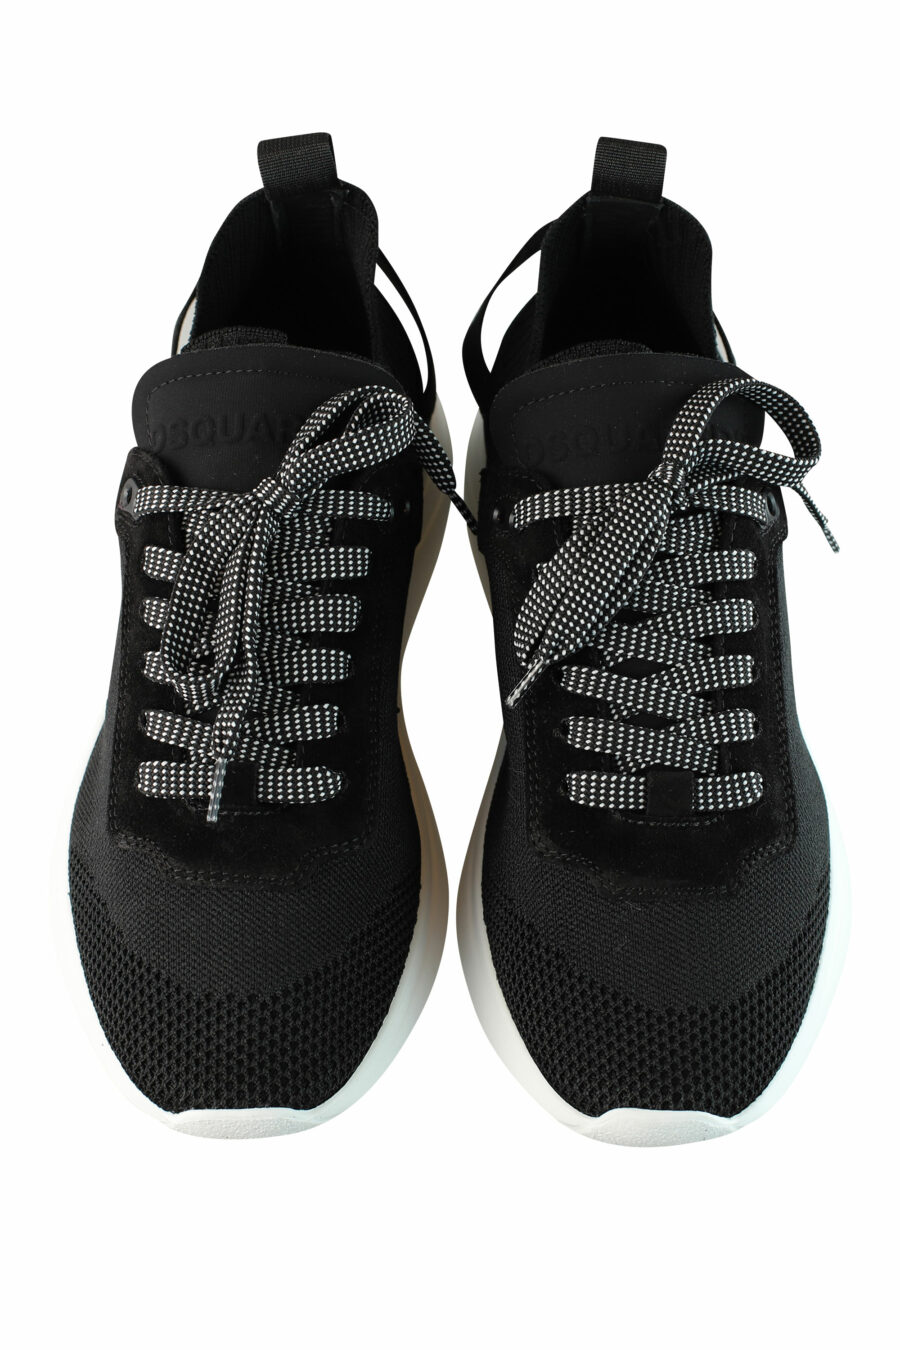 Zapatillas negras "fly" con suela blanca y minilogo blanco - IMG 1466